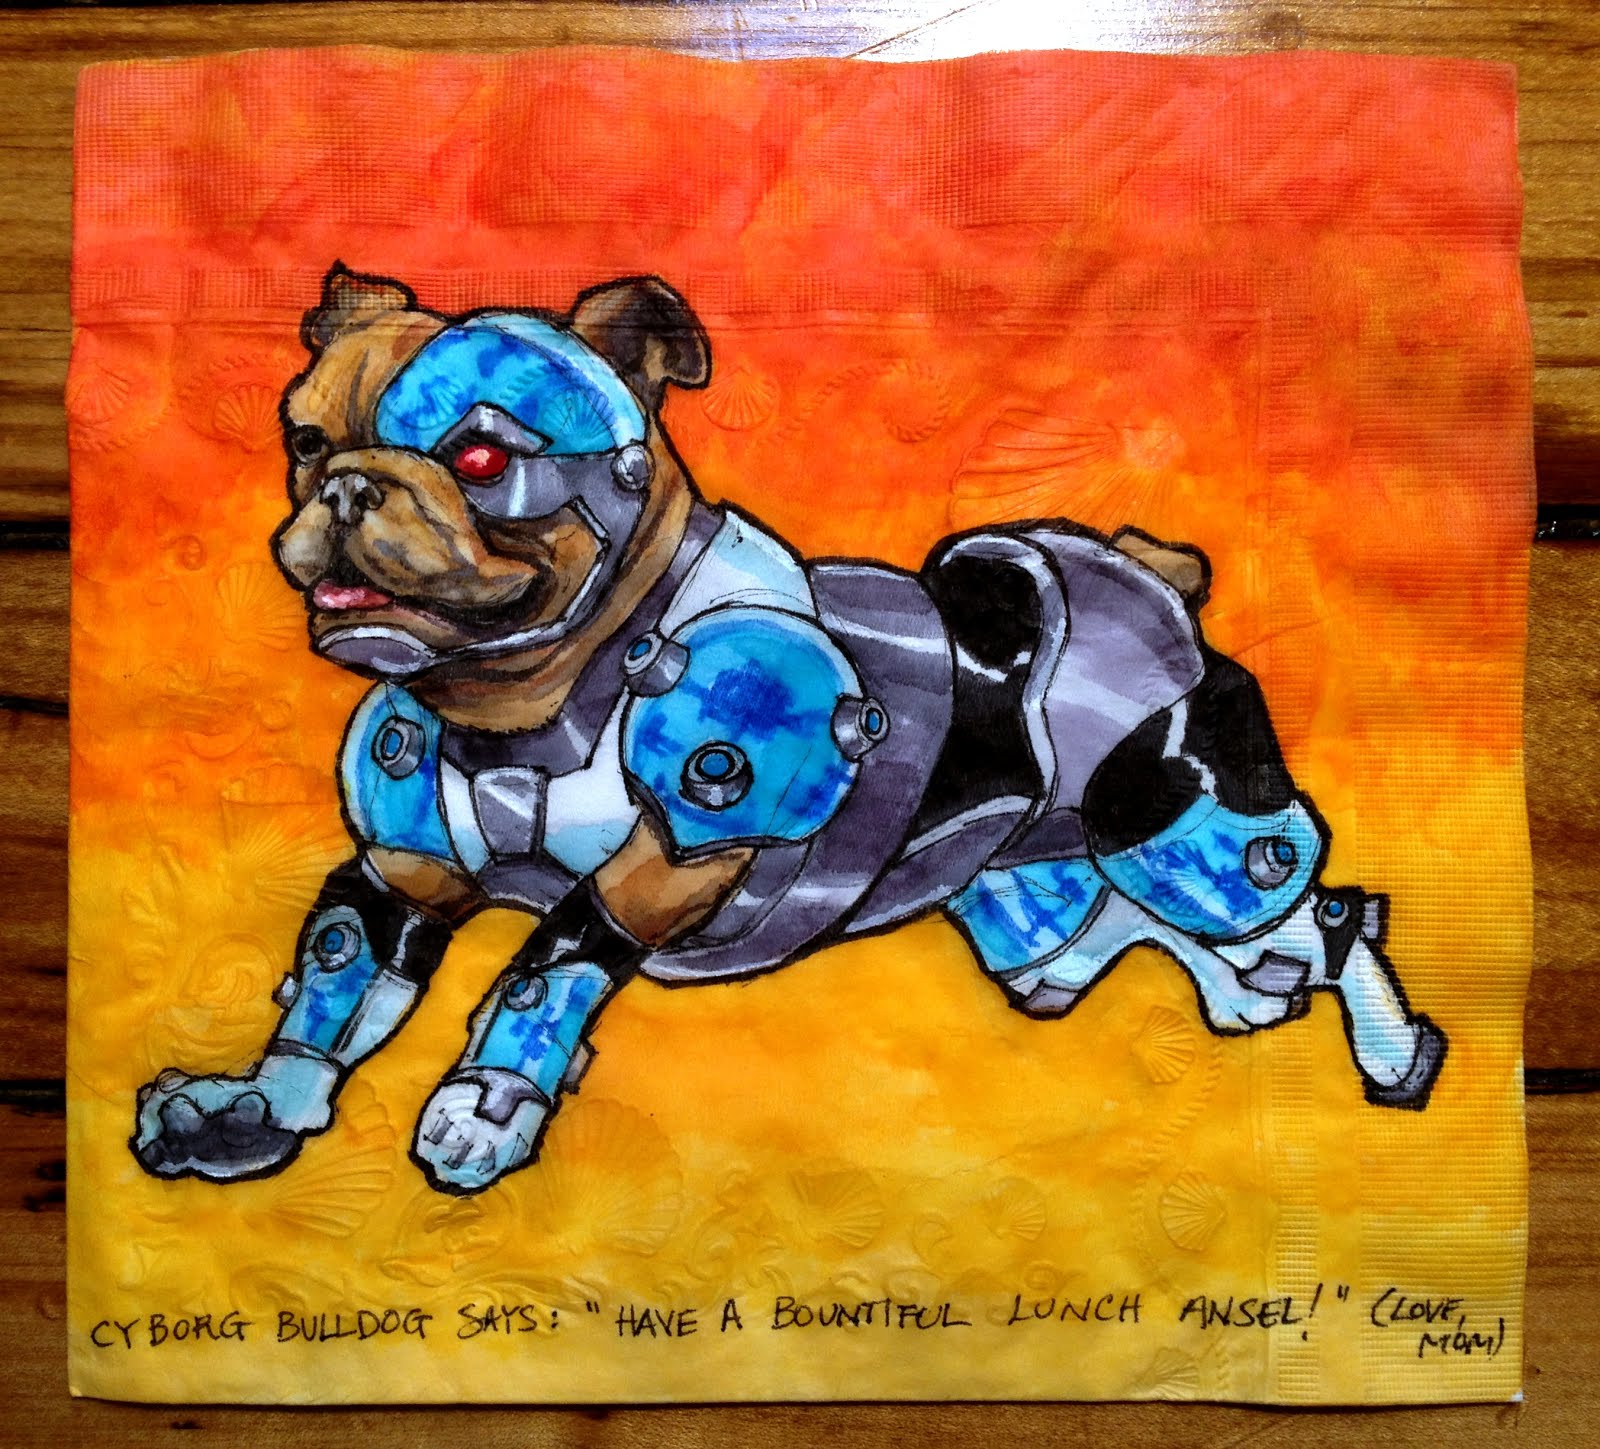 cyborg bulldog - Cyborg Bulldog Says " Have A Bountiful Lunch Ansel!" Love, pau